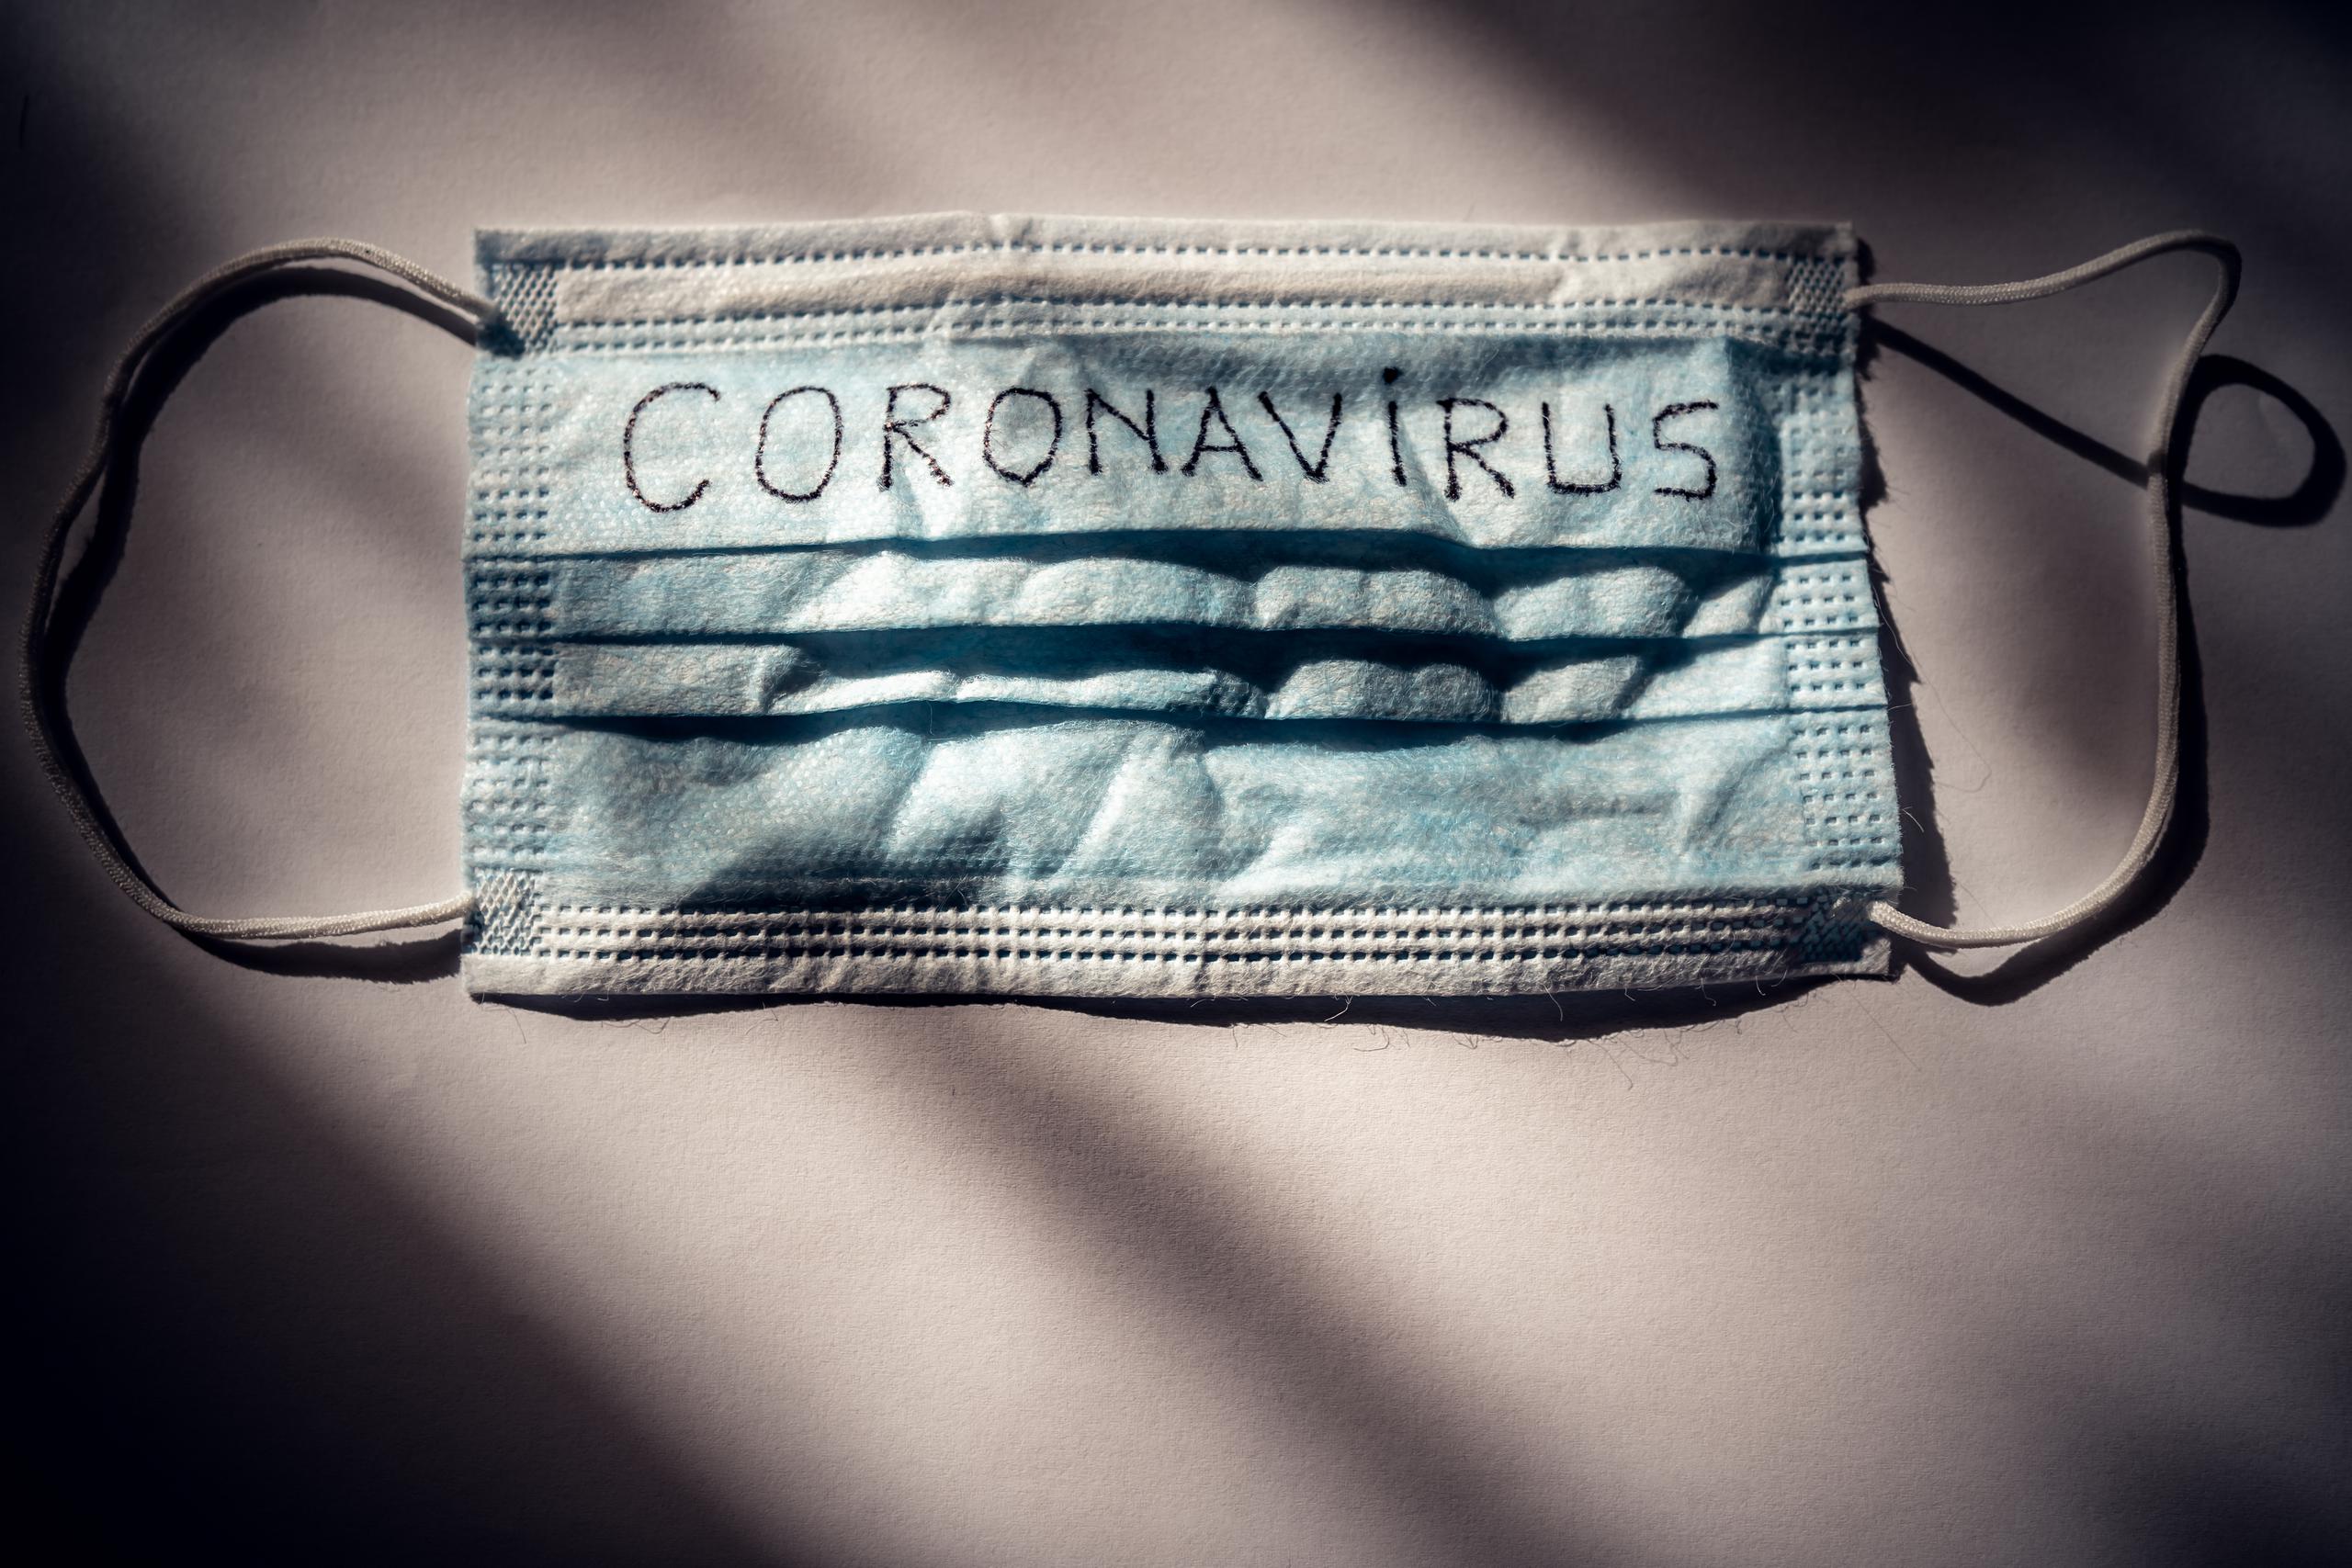 Una mascarilla utilizada para protegerse contra el coronavirus.